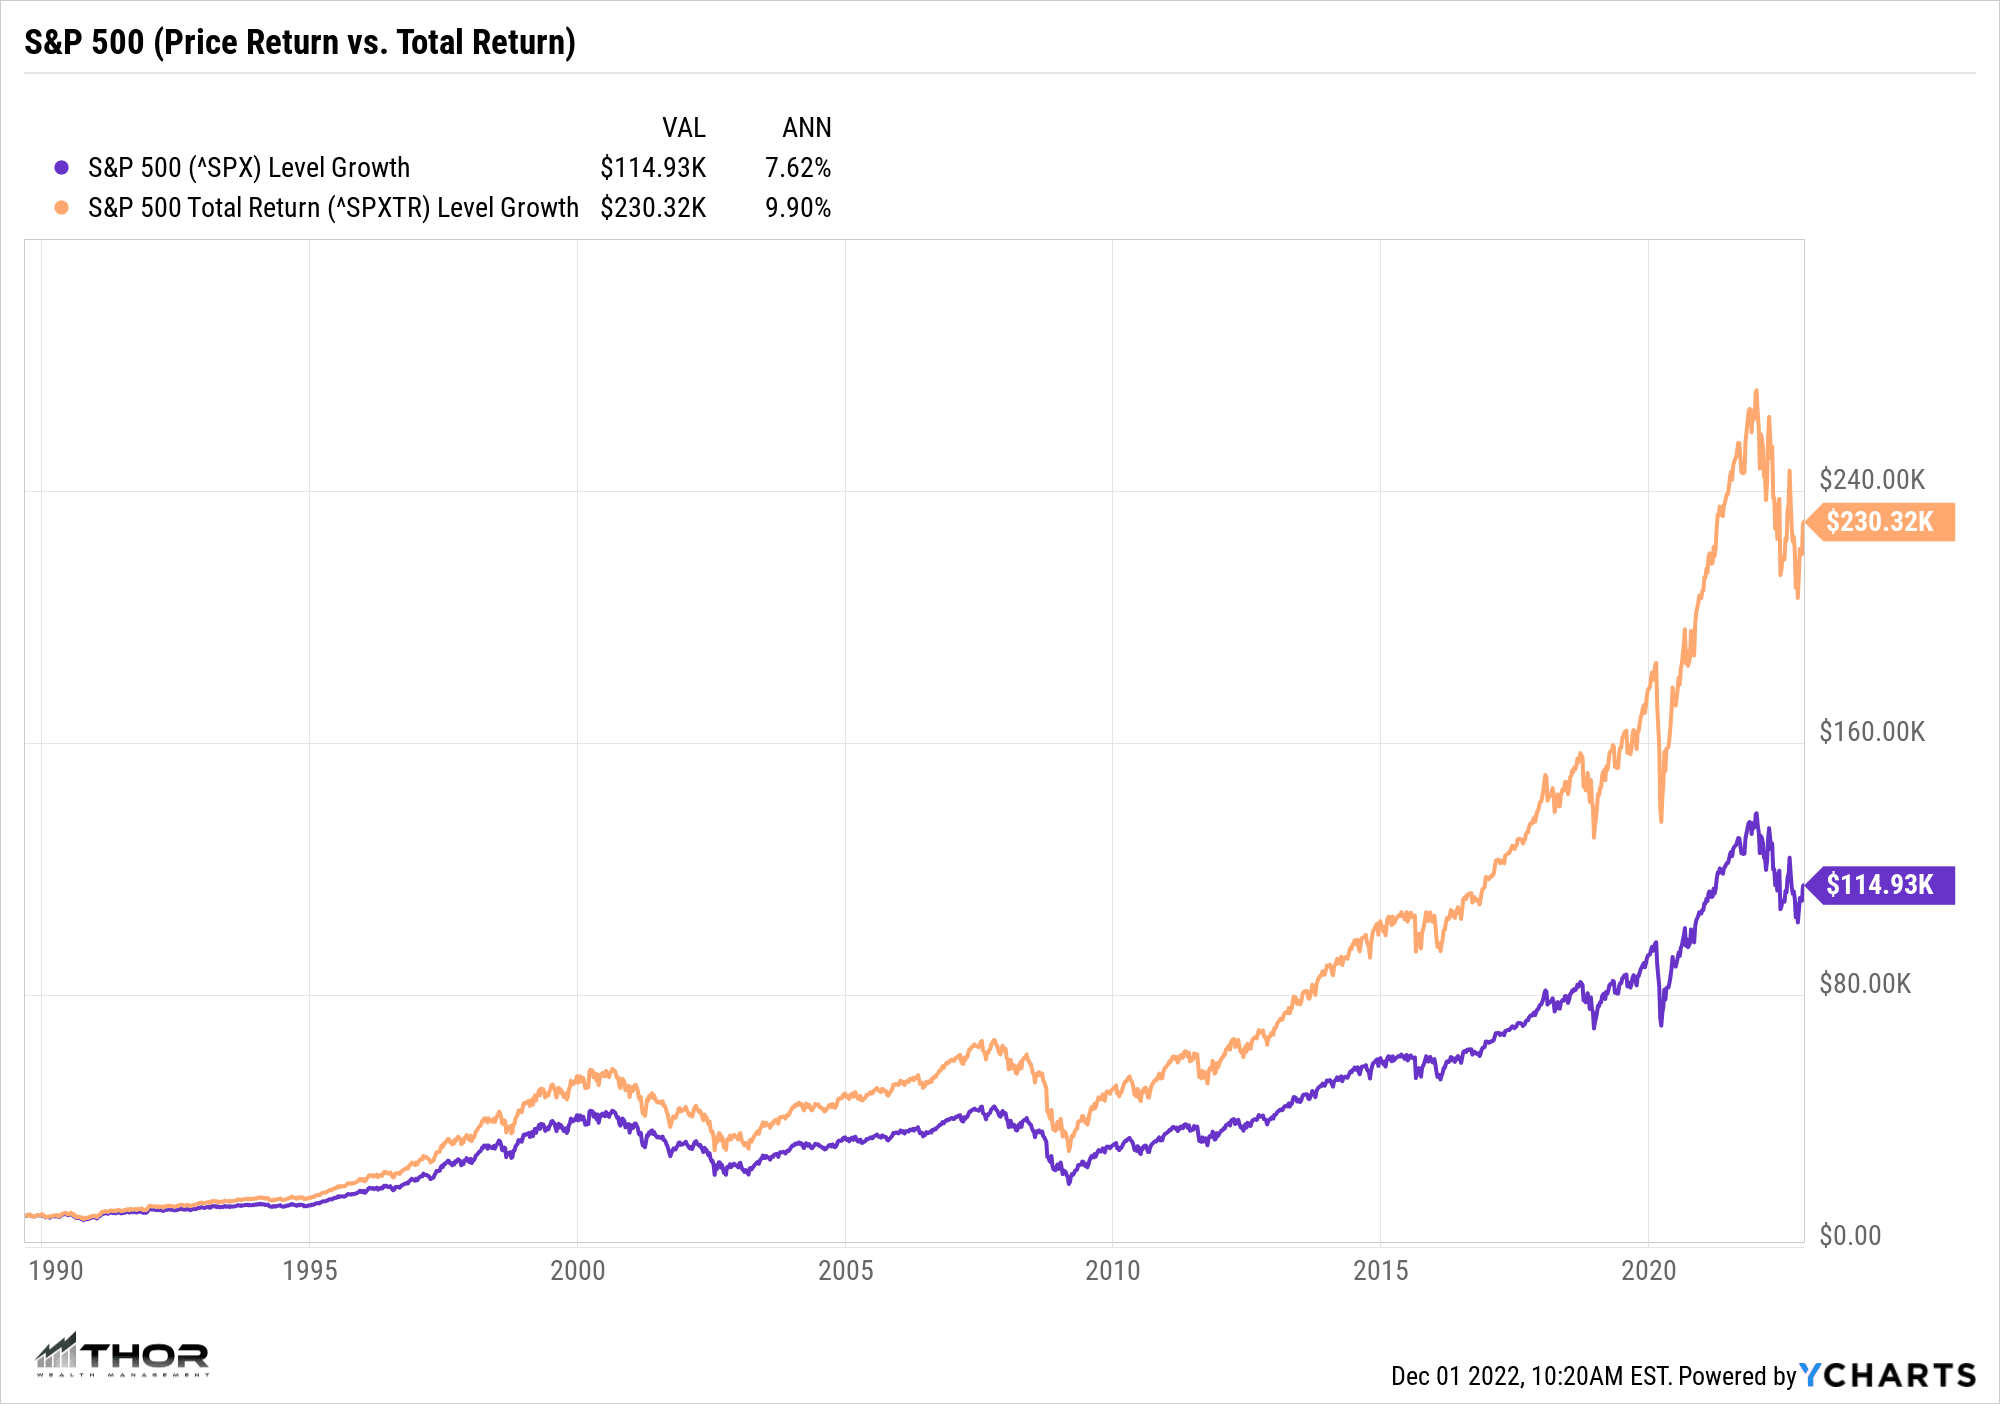 Total Return vs. Price Return